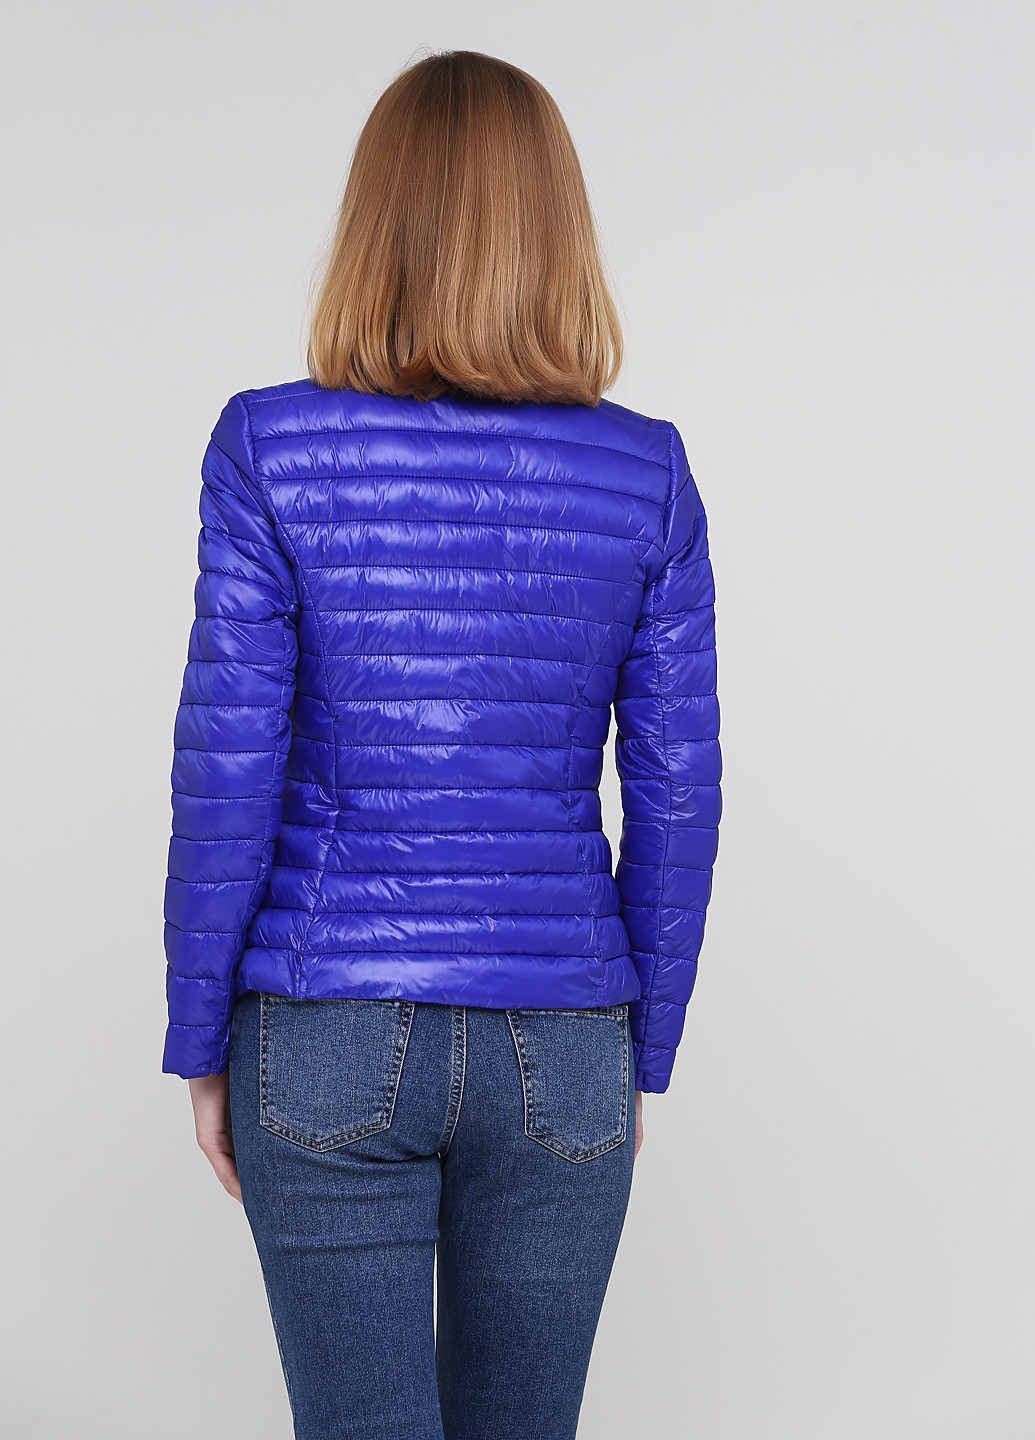 Синяя демисезонная куртка New Collection